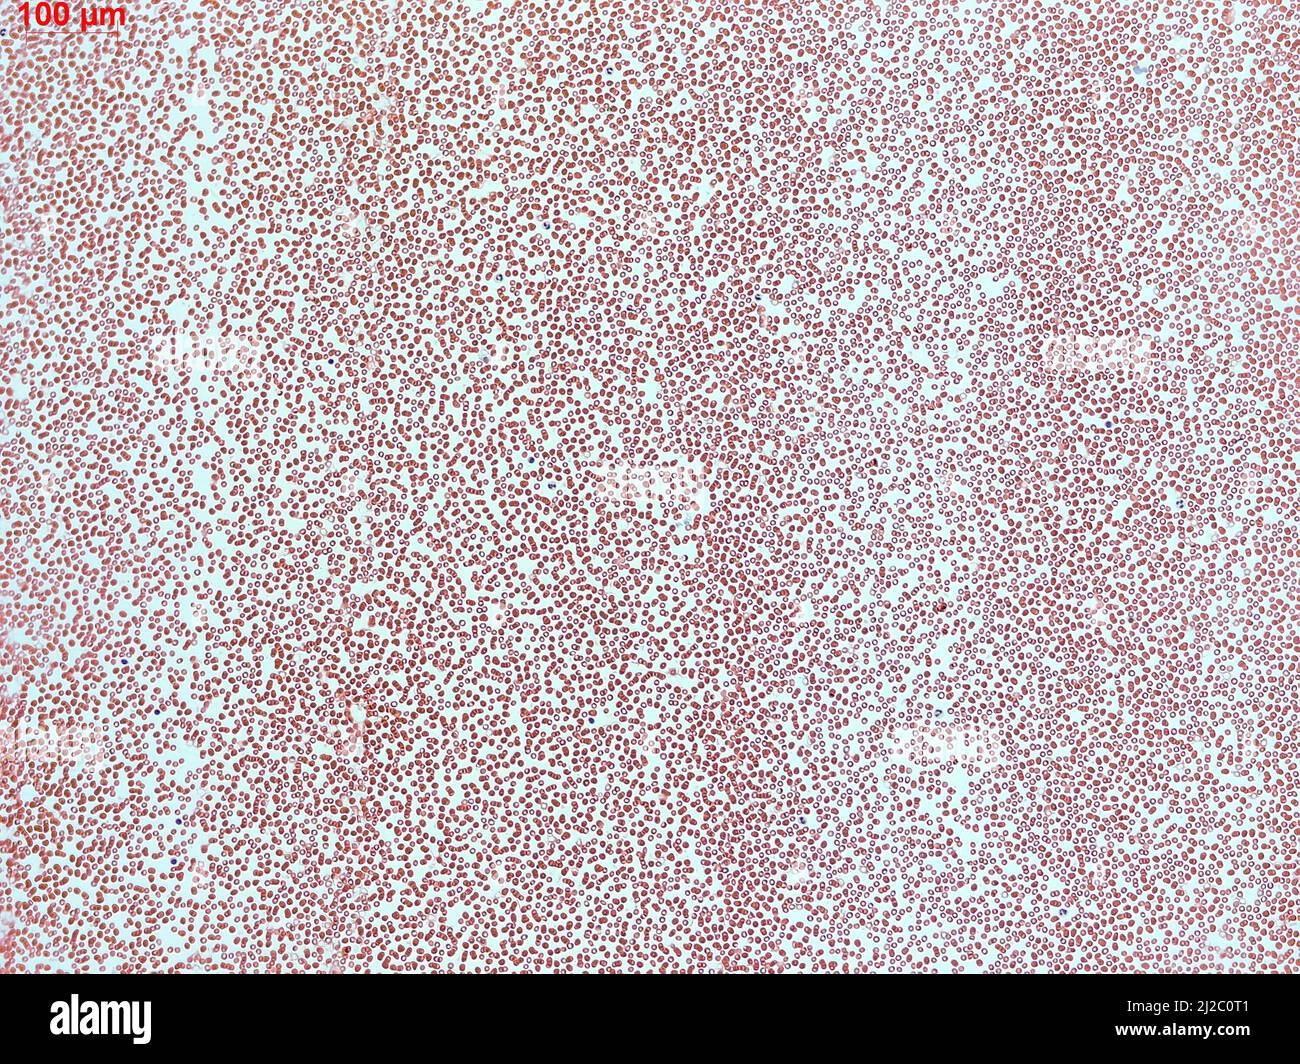 Menschliche Blutkörperchen unter dem Mikroskop. Vergrößerter Abstrich von roten Blutkörperchen im Blutplasma. Stockfoto